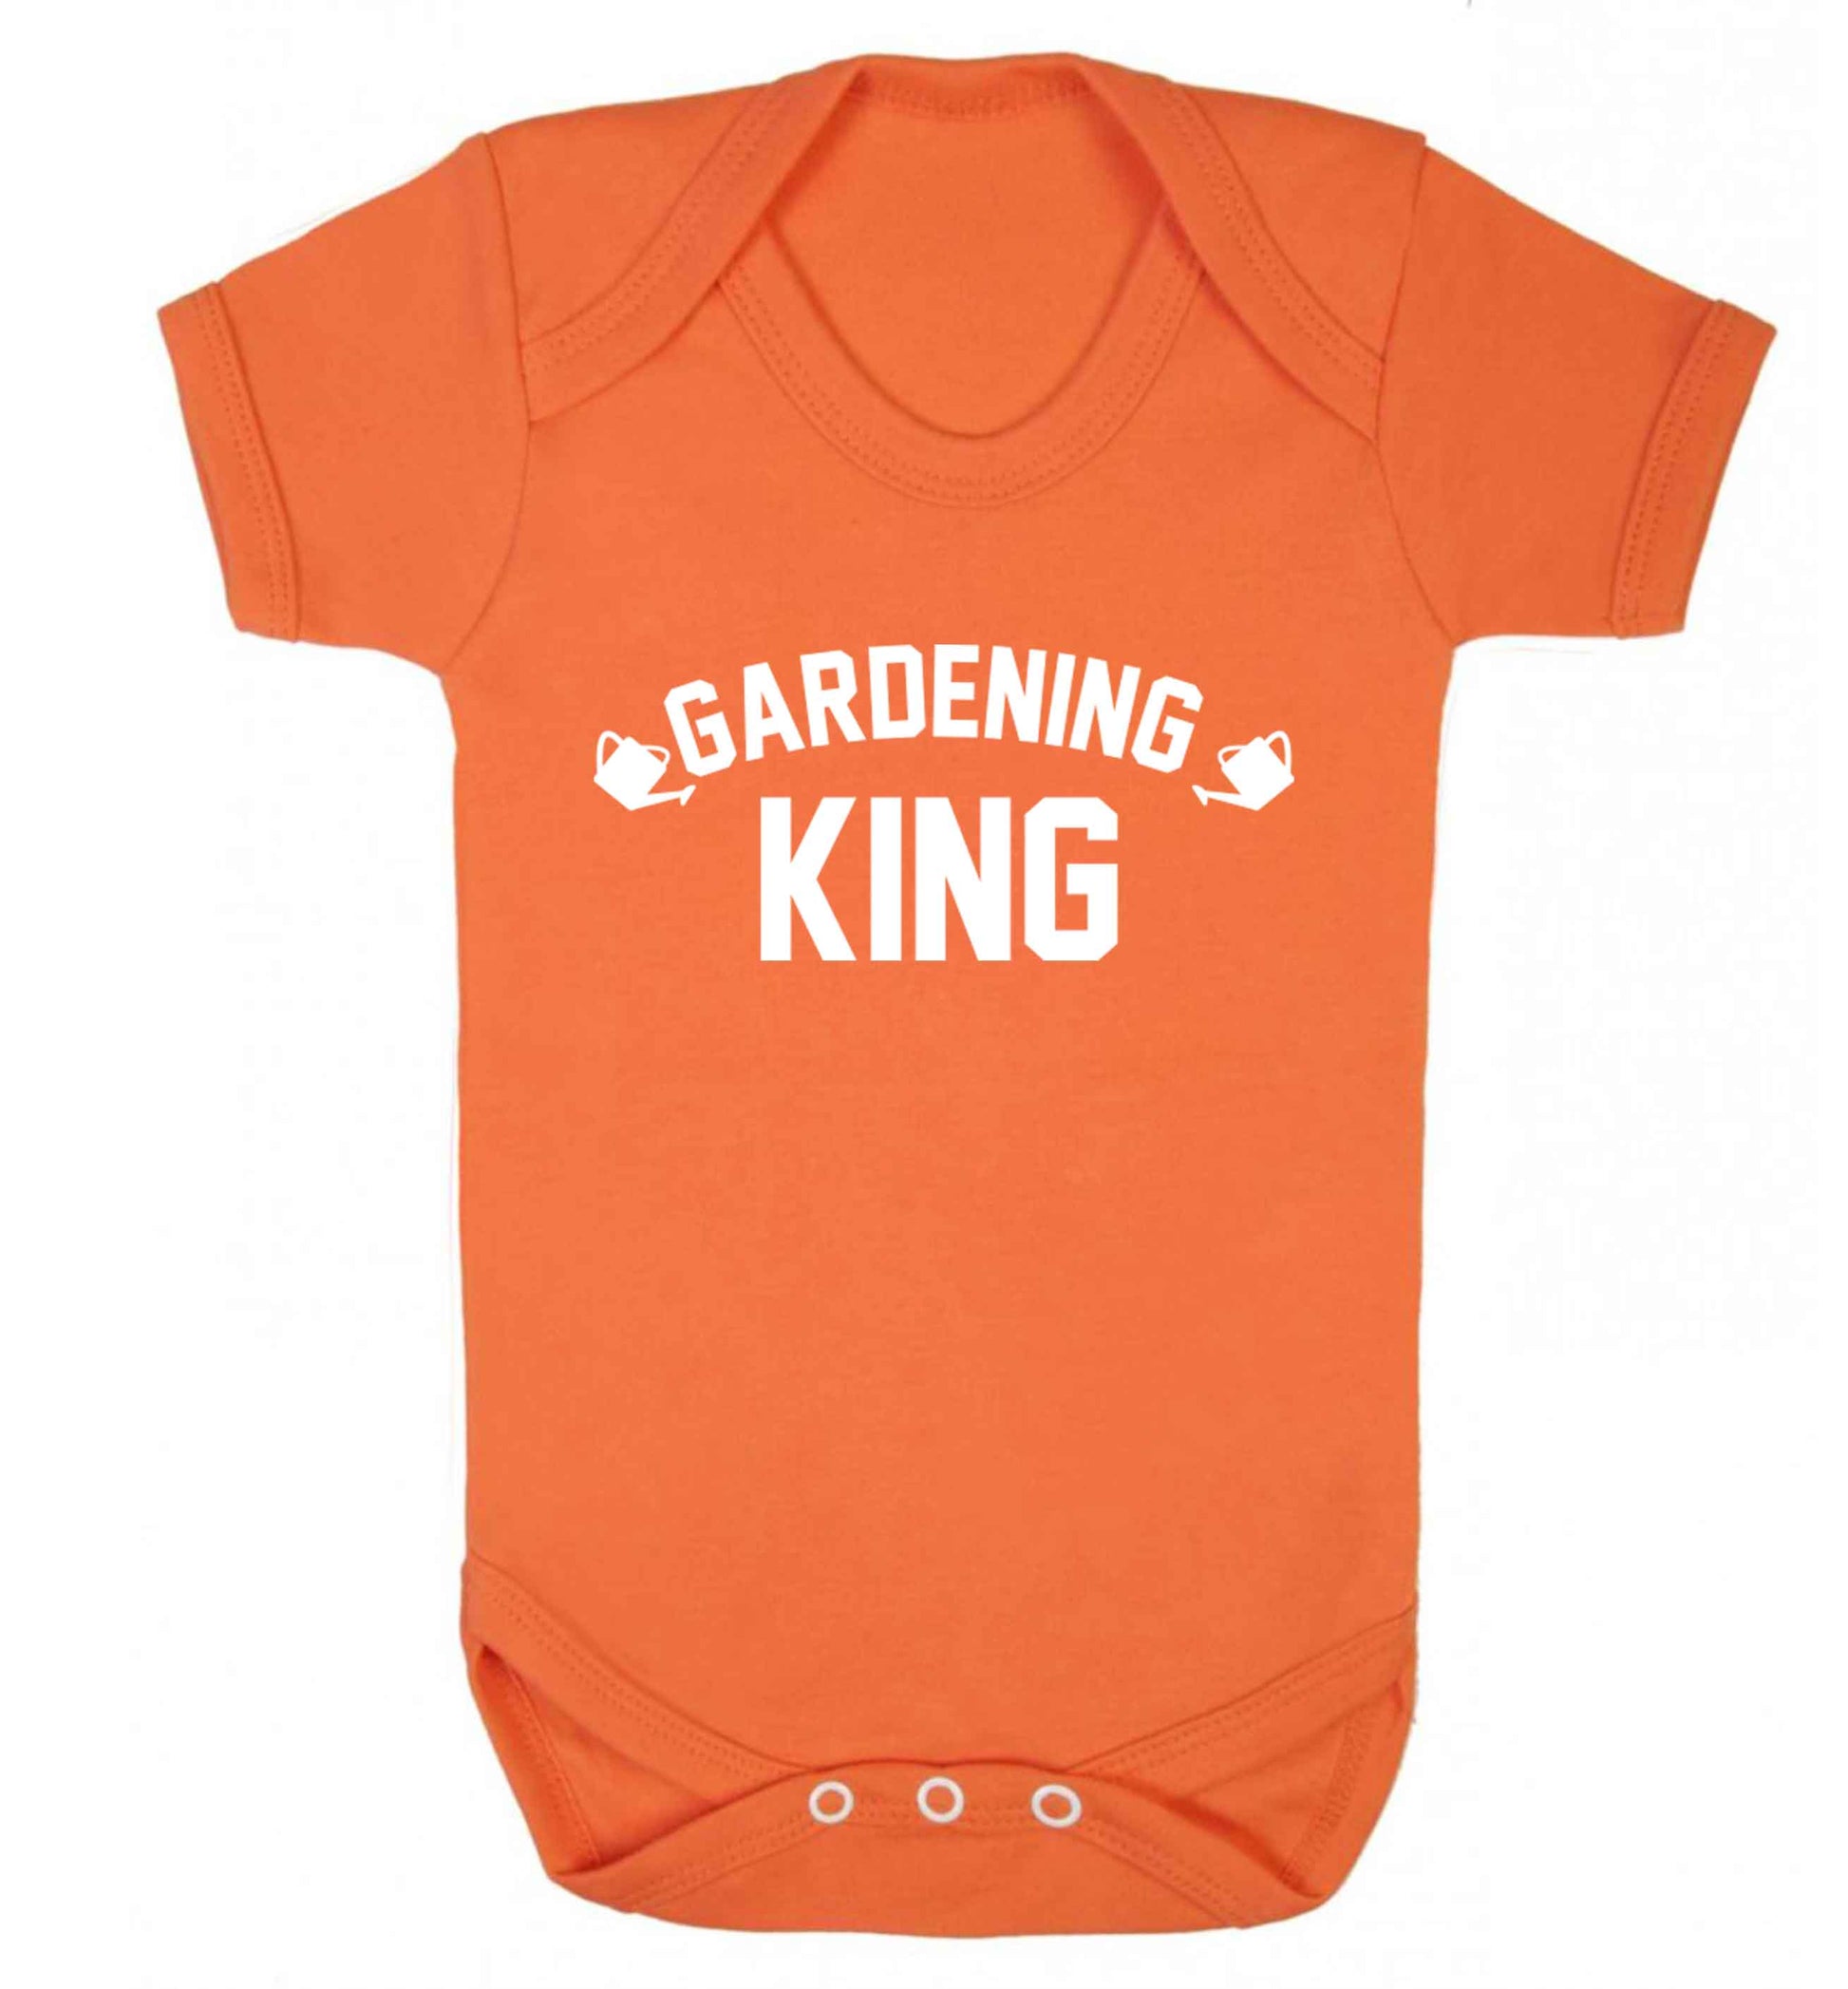 Gardening king Baby Vest orange 18-24 months